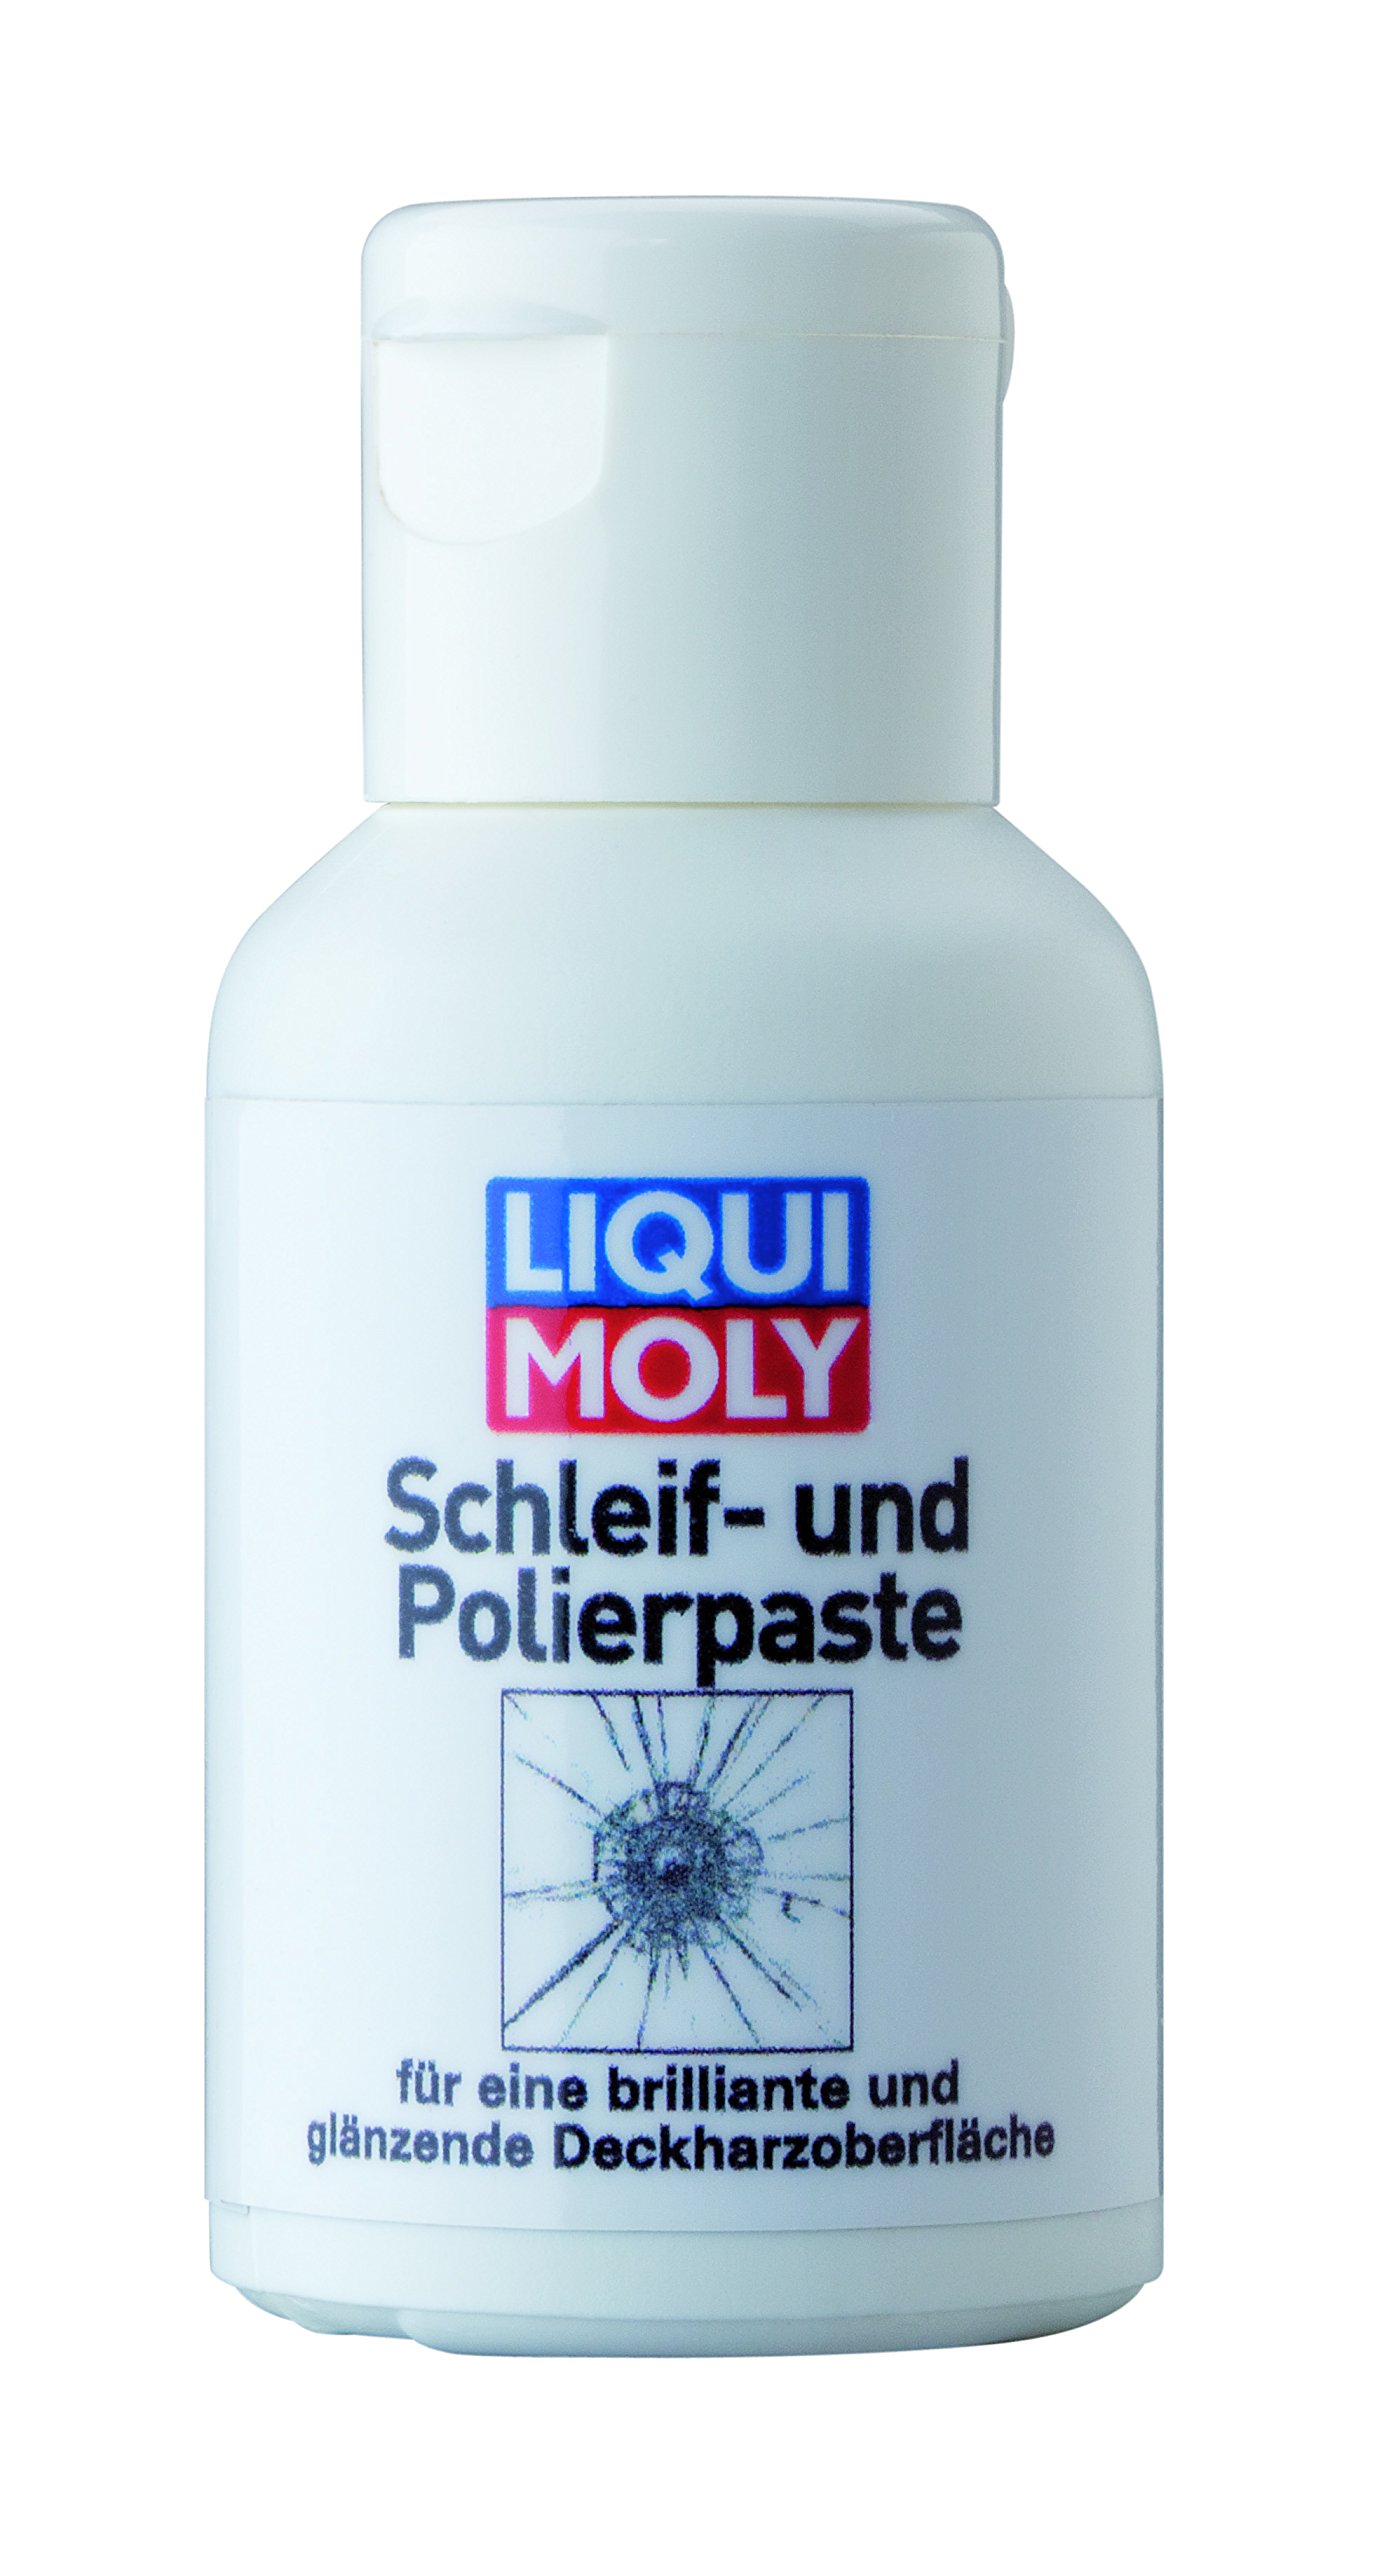 LIQUI MOLY Schleif- und Polierpaste | 25 ml | Klebstoff | Art.-Nr.: 6297 von Liqui Moly